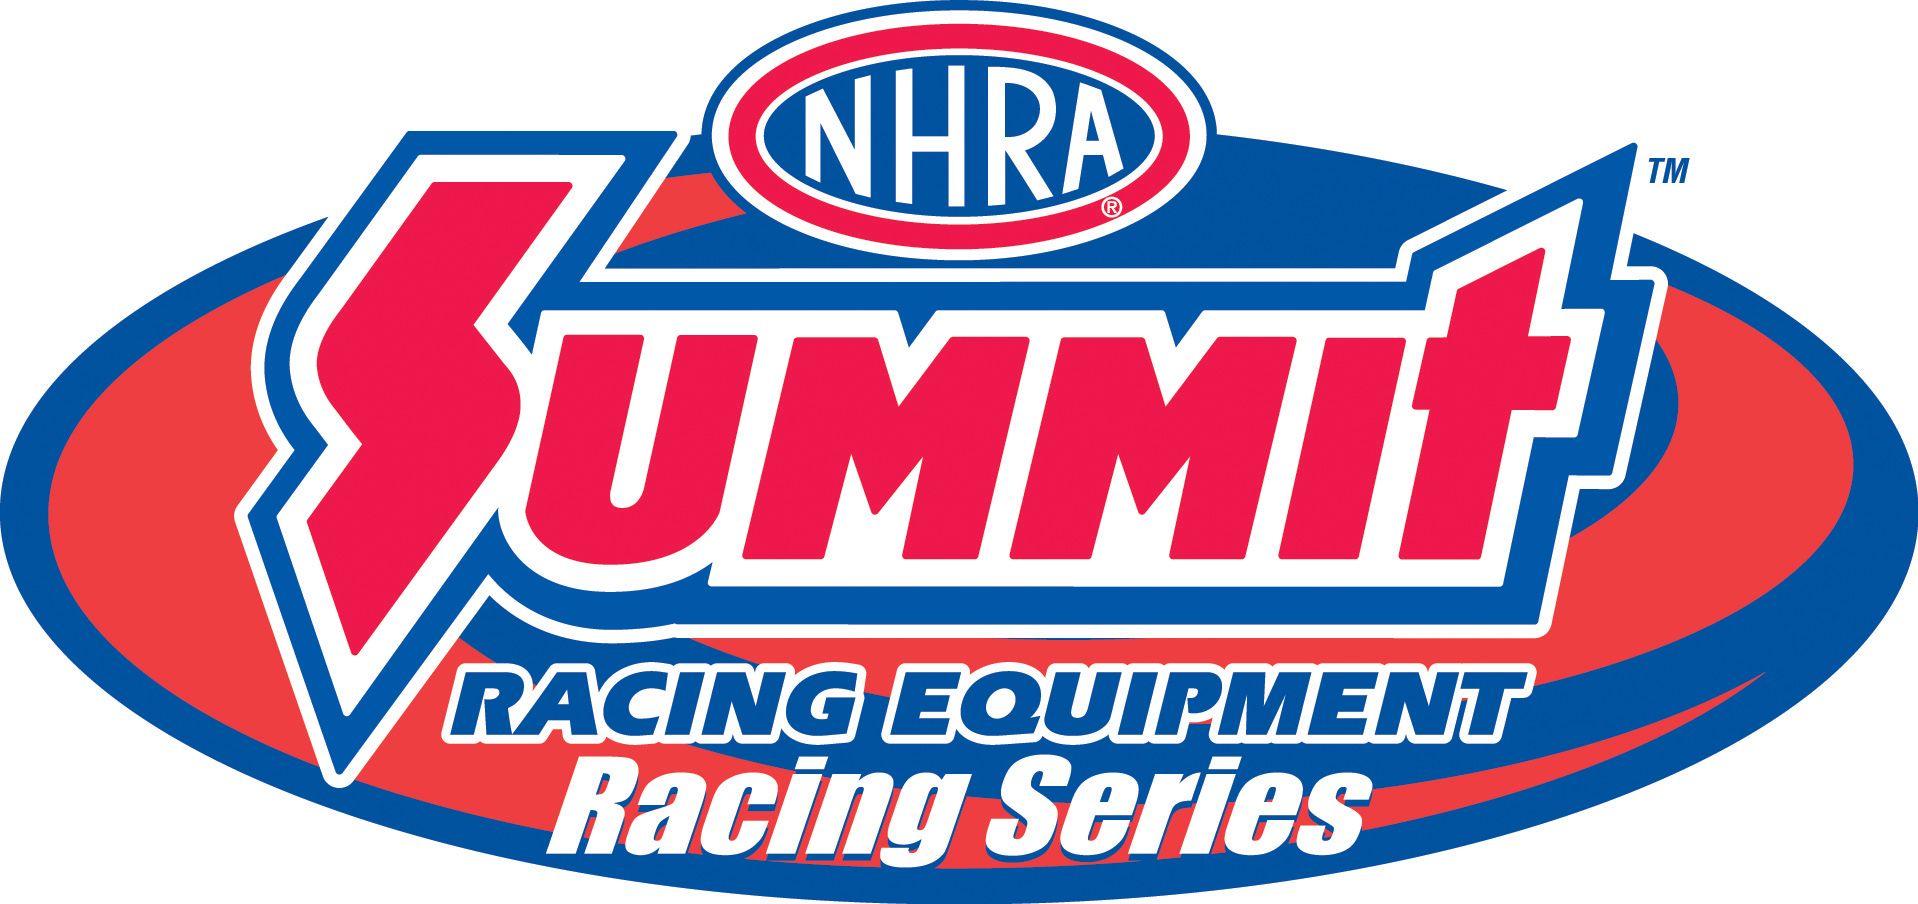 NHRA Drag Racing Logo - Drag Racing News and Results. Drag Race Results